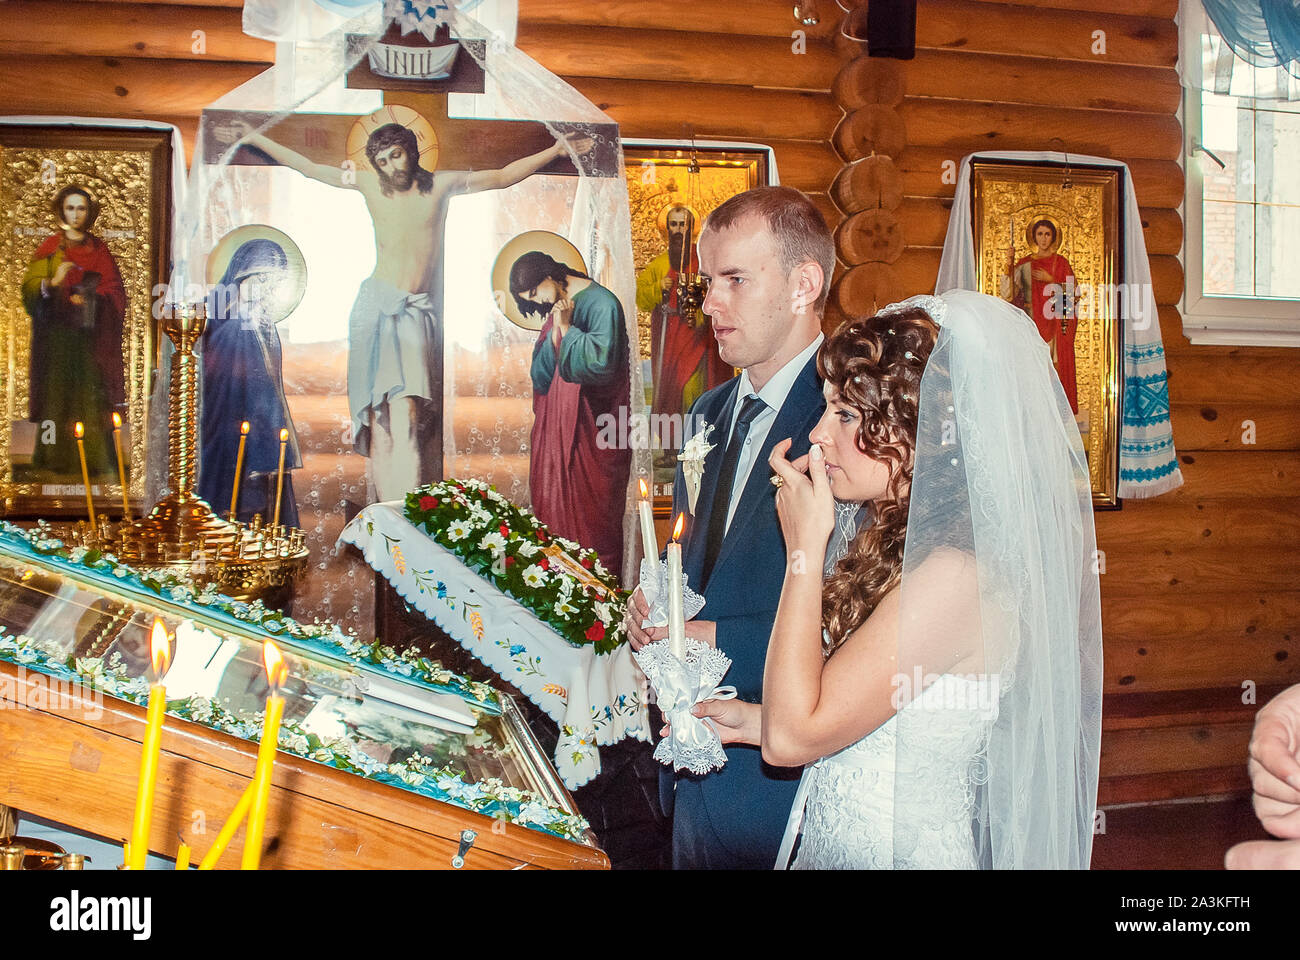 Matrimonio ucraino immagini e fotografie stock ad alta risoluzione - Alamy